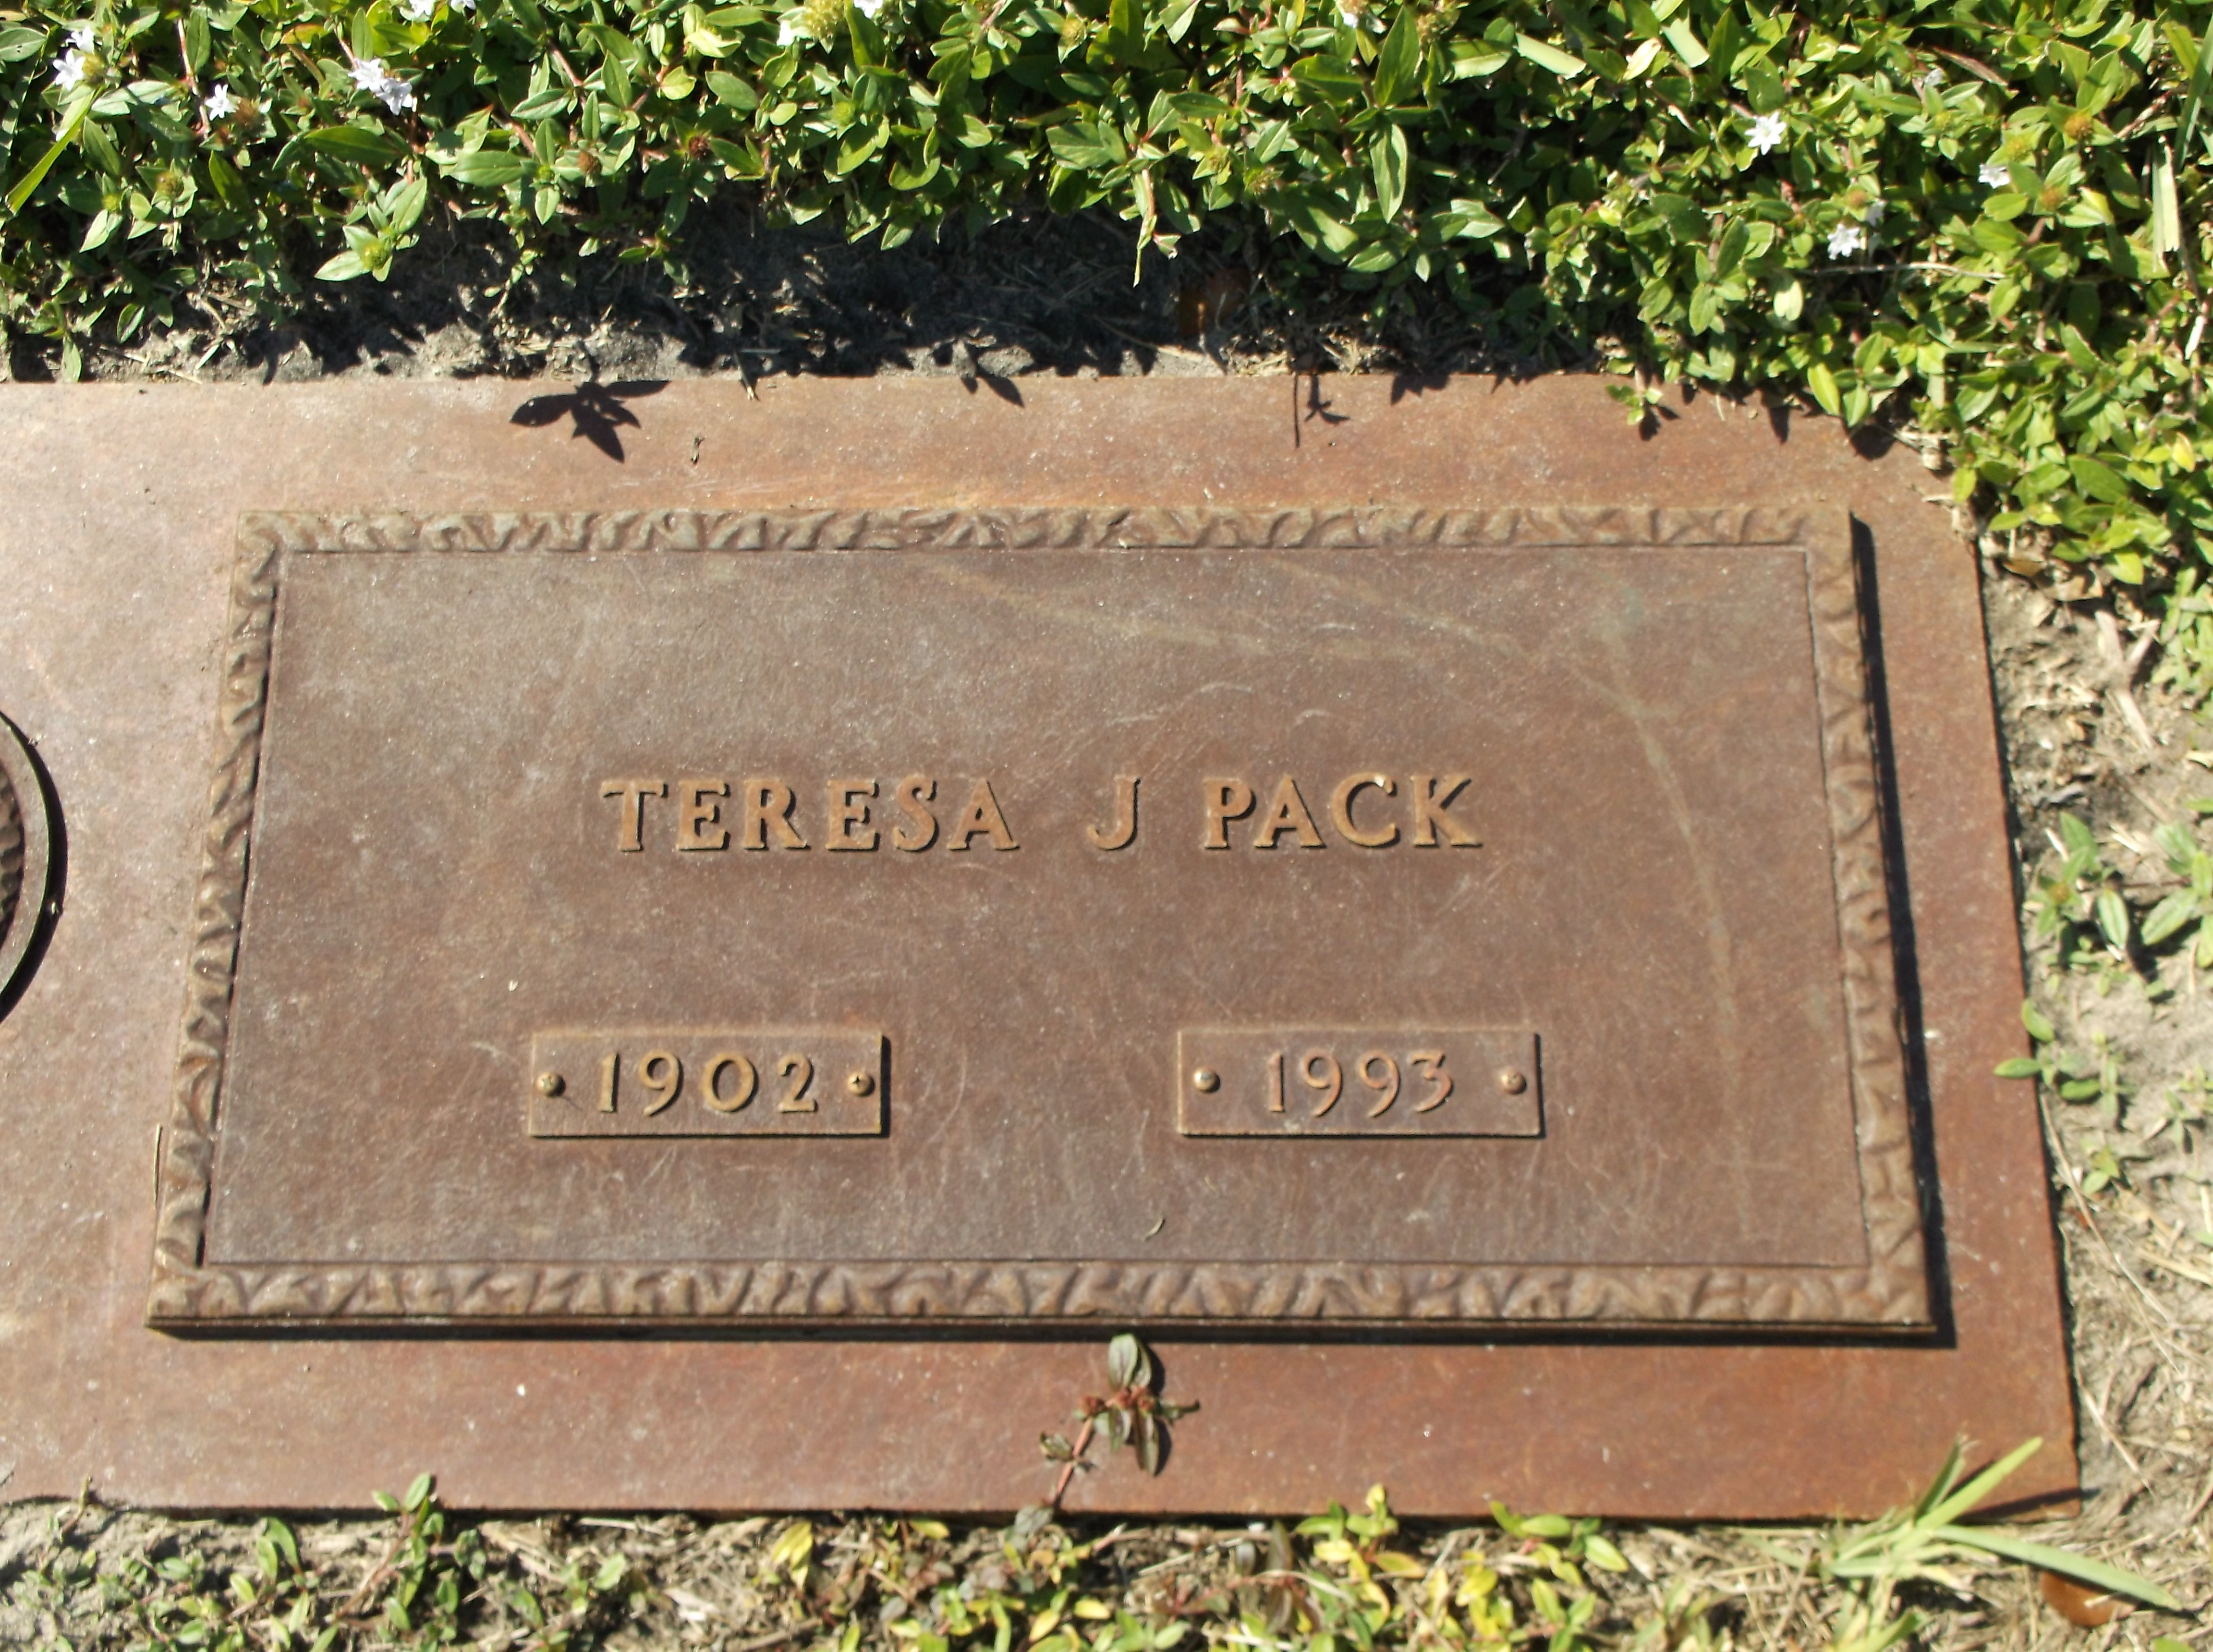 Teresa J Pack